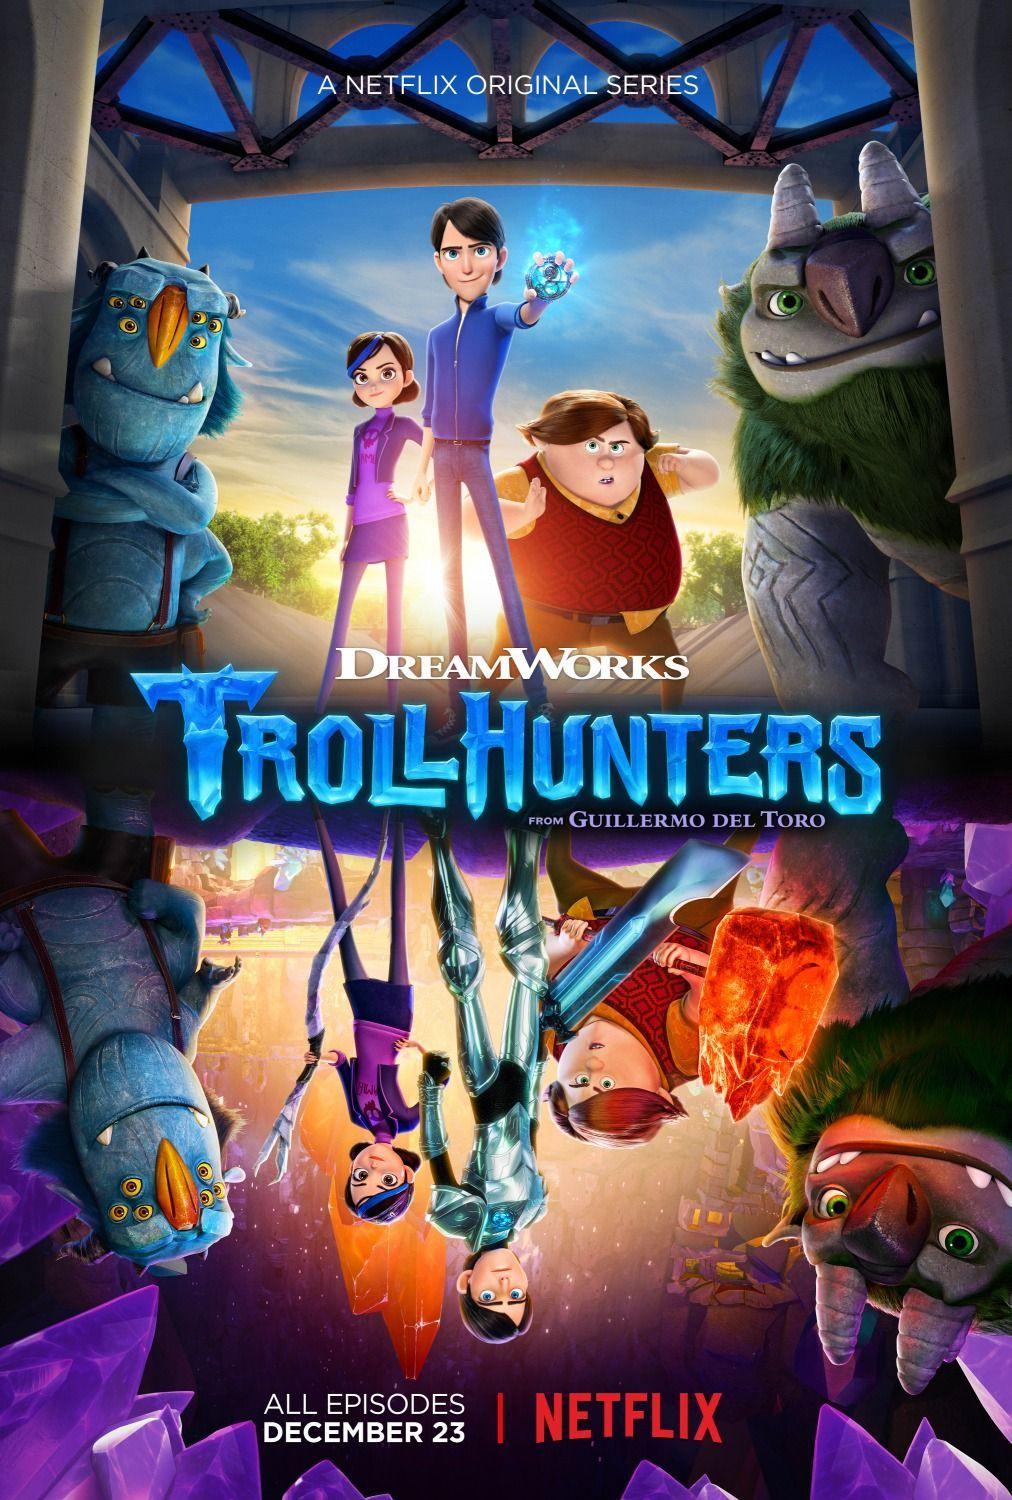 Trollhunters Season 1 Wallpapers